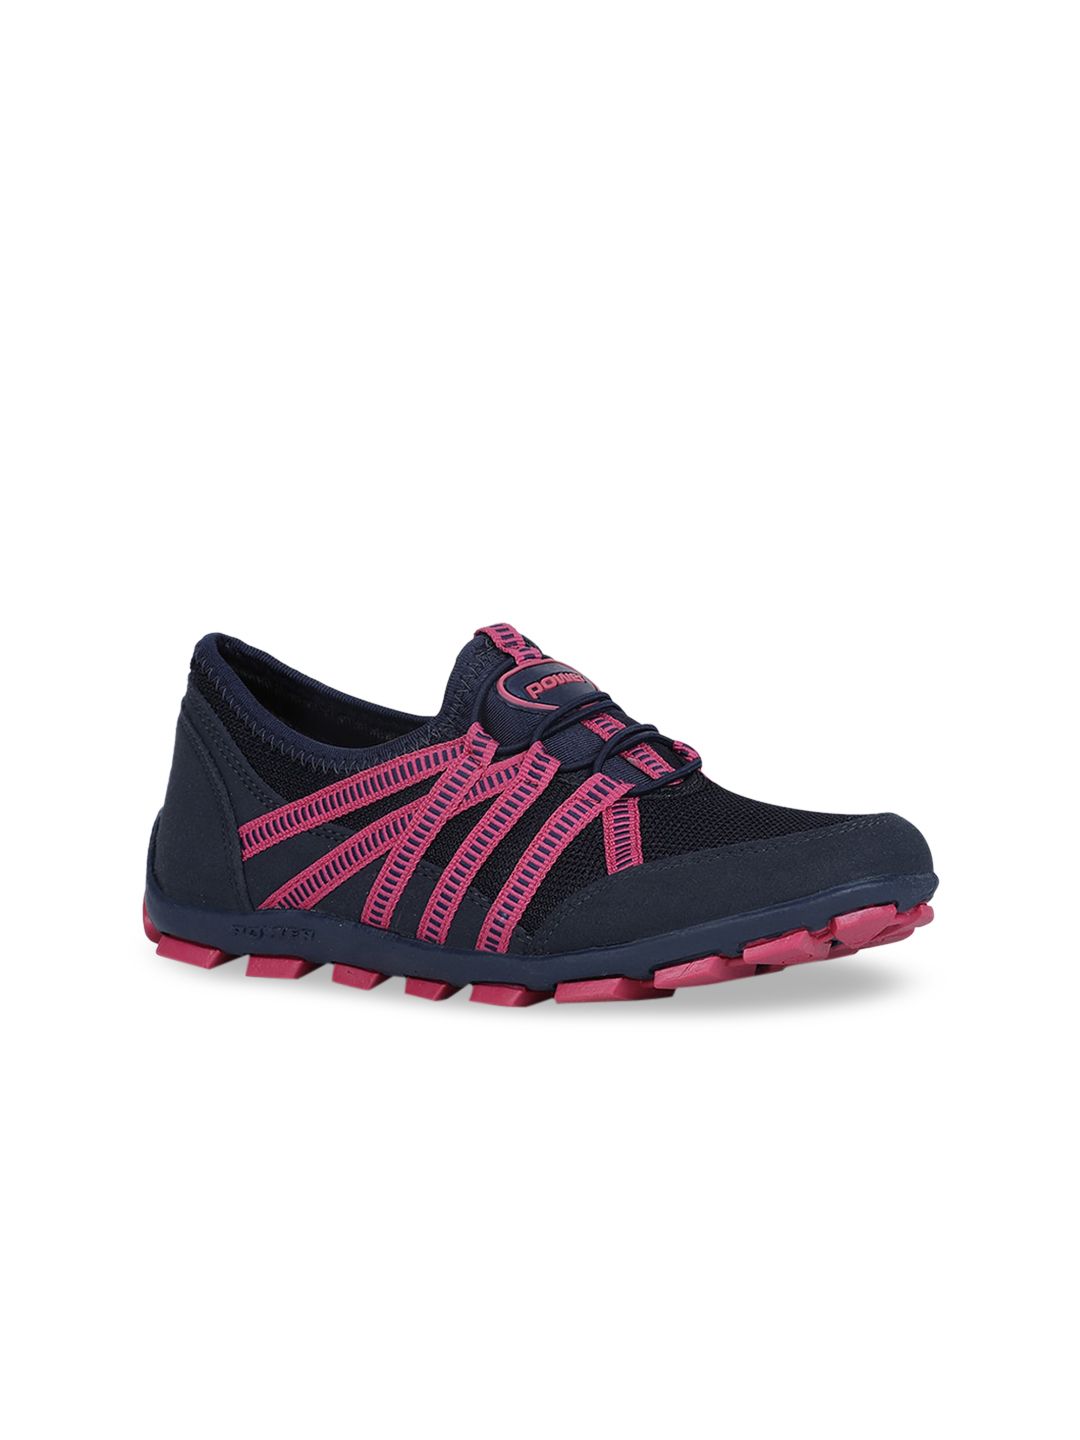 Power Women Pink Mesh Walking Shoes Price in India